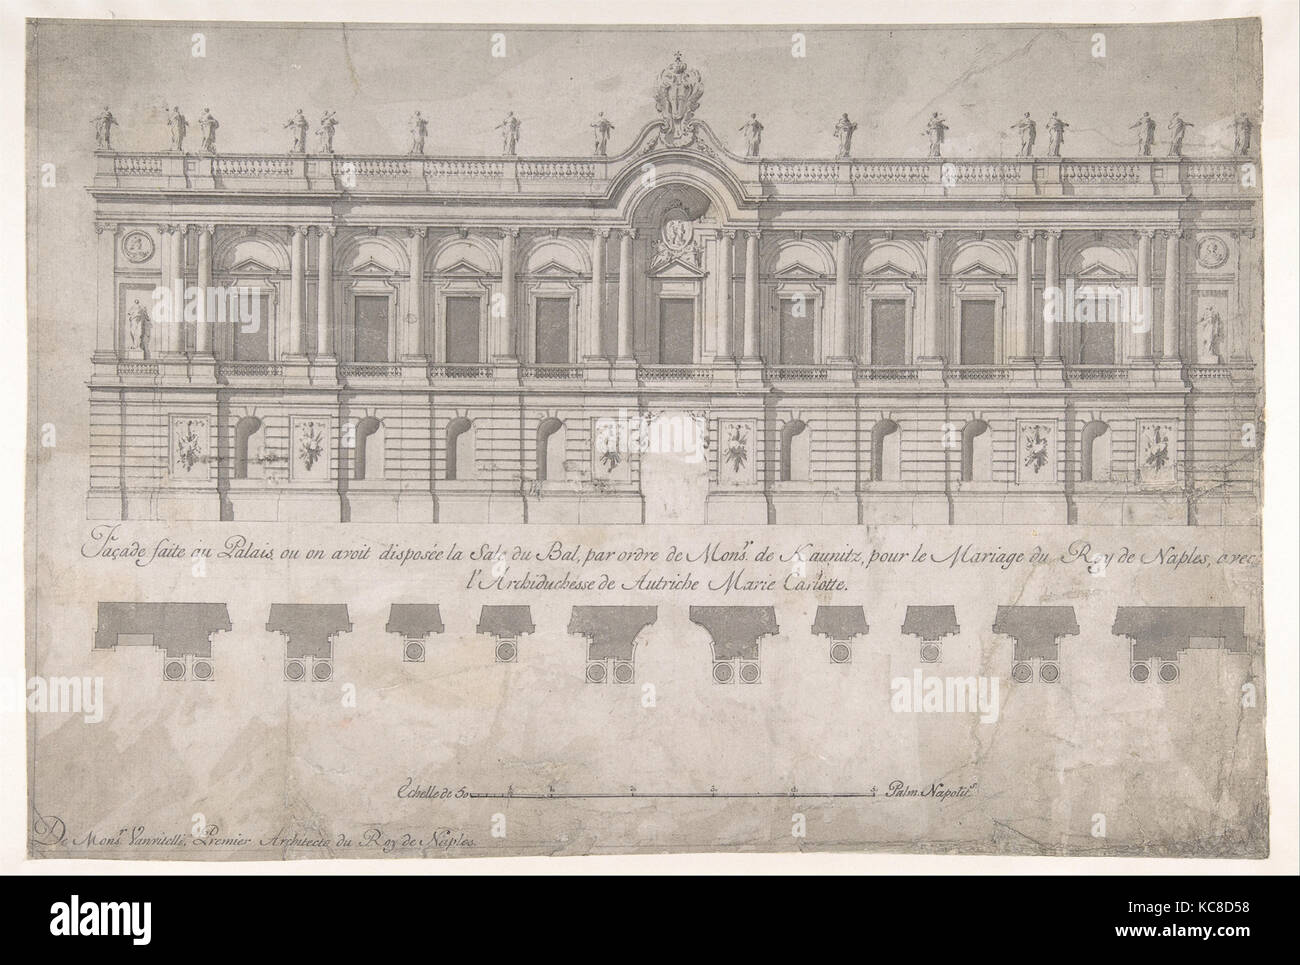 La facciata del palazzo decorato per il matrimonio del Re di Napoli per l'Arciduchessa d'Austria Luigi Vanvitelli, 1700-1773 Foto Stock